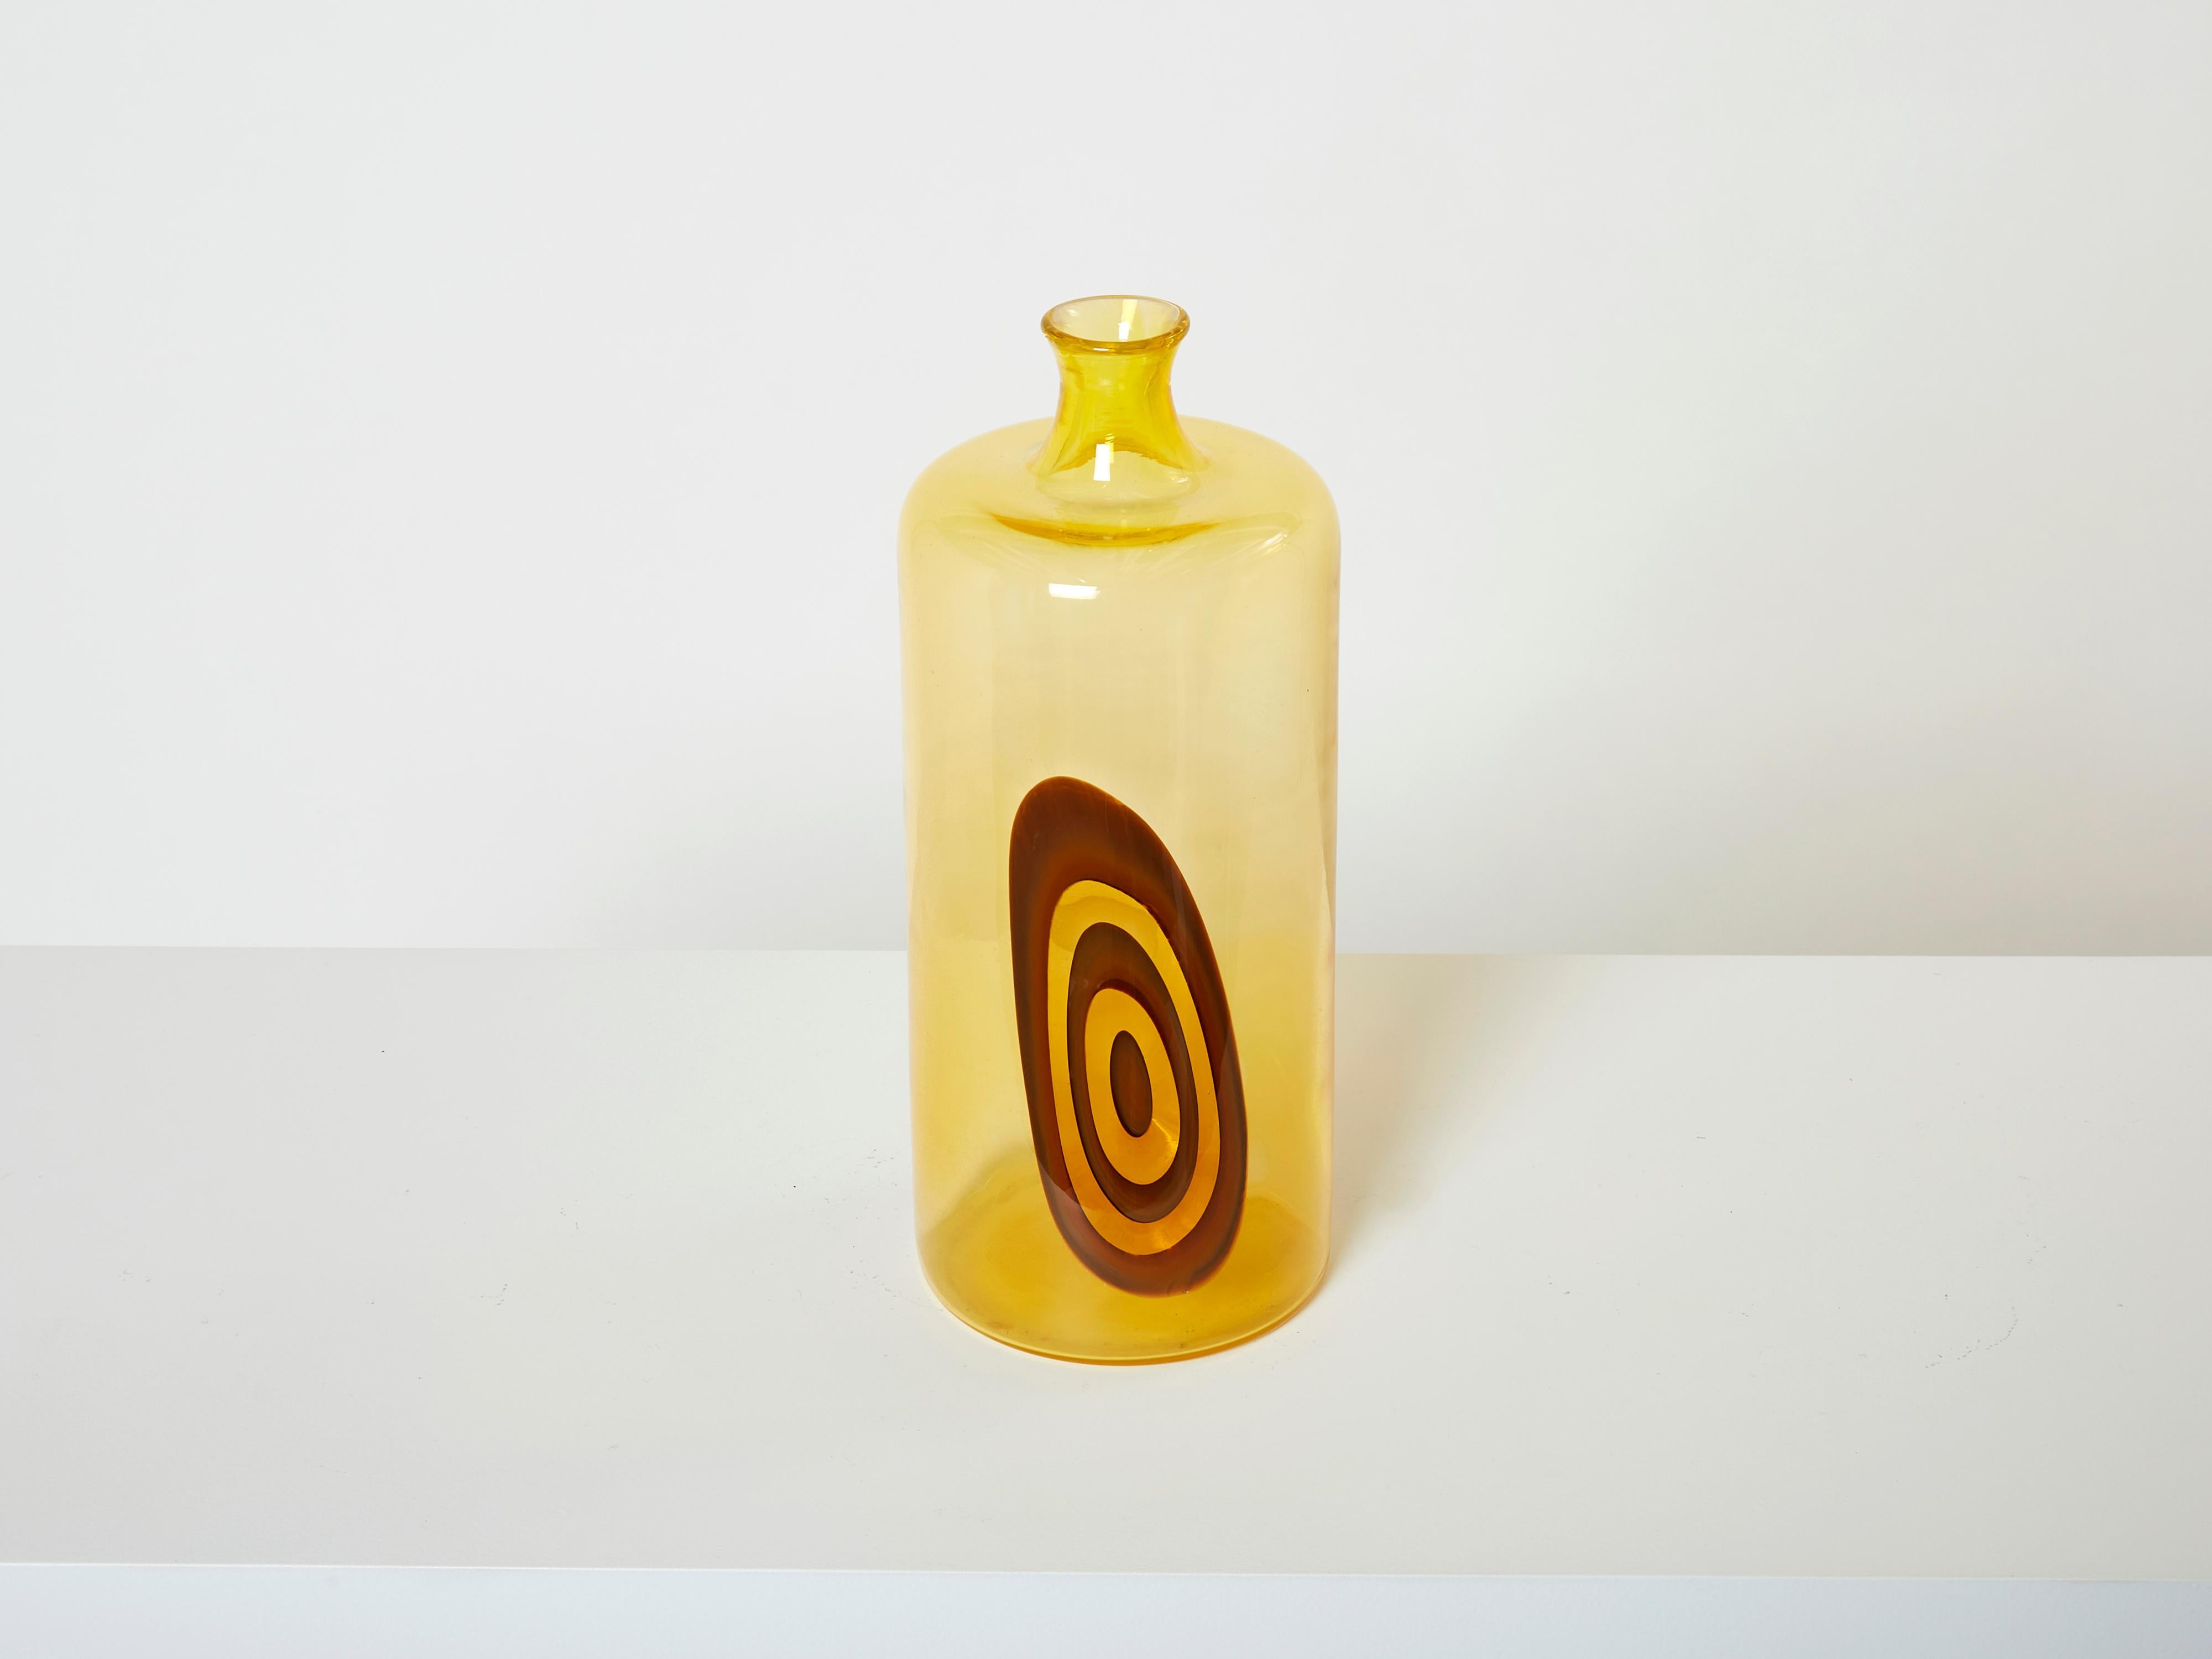 Seltene Vase von Gianmaria Potenza für La Murrina aus dem Jahr 1968 aus der Serie Saturno. Diese Vase hat auffällige Farben, mit konzentrischen orangefarbenen Kreisen auf einem bernsteinfarbenen Hintergrund, untergetaucht gelbes Muranoglas. Er ist